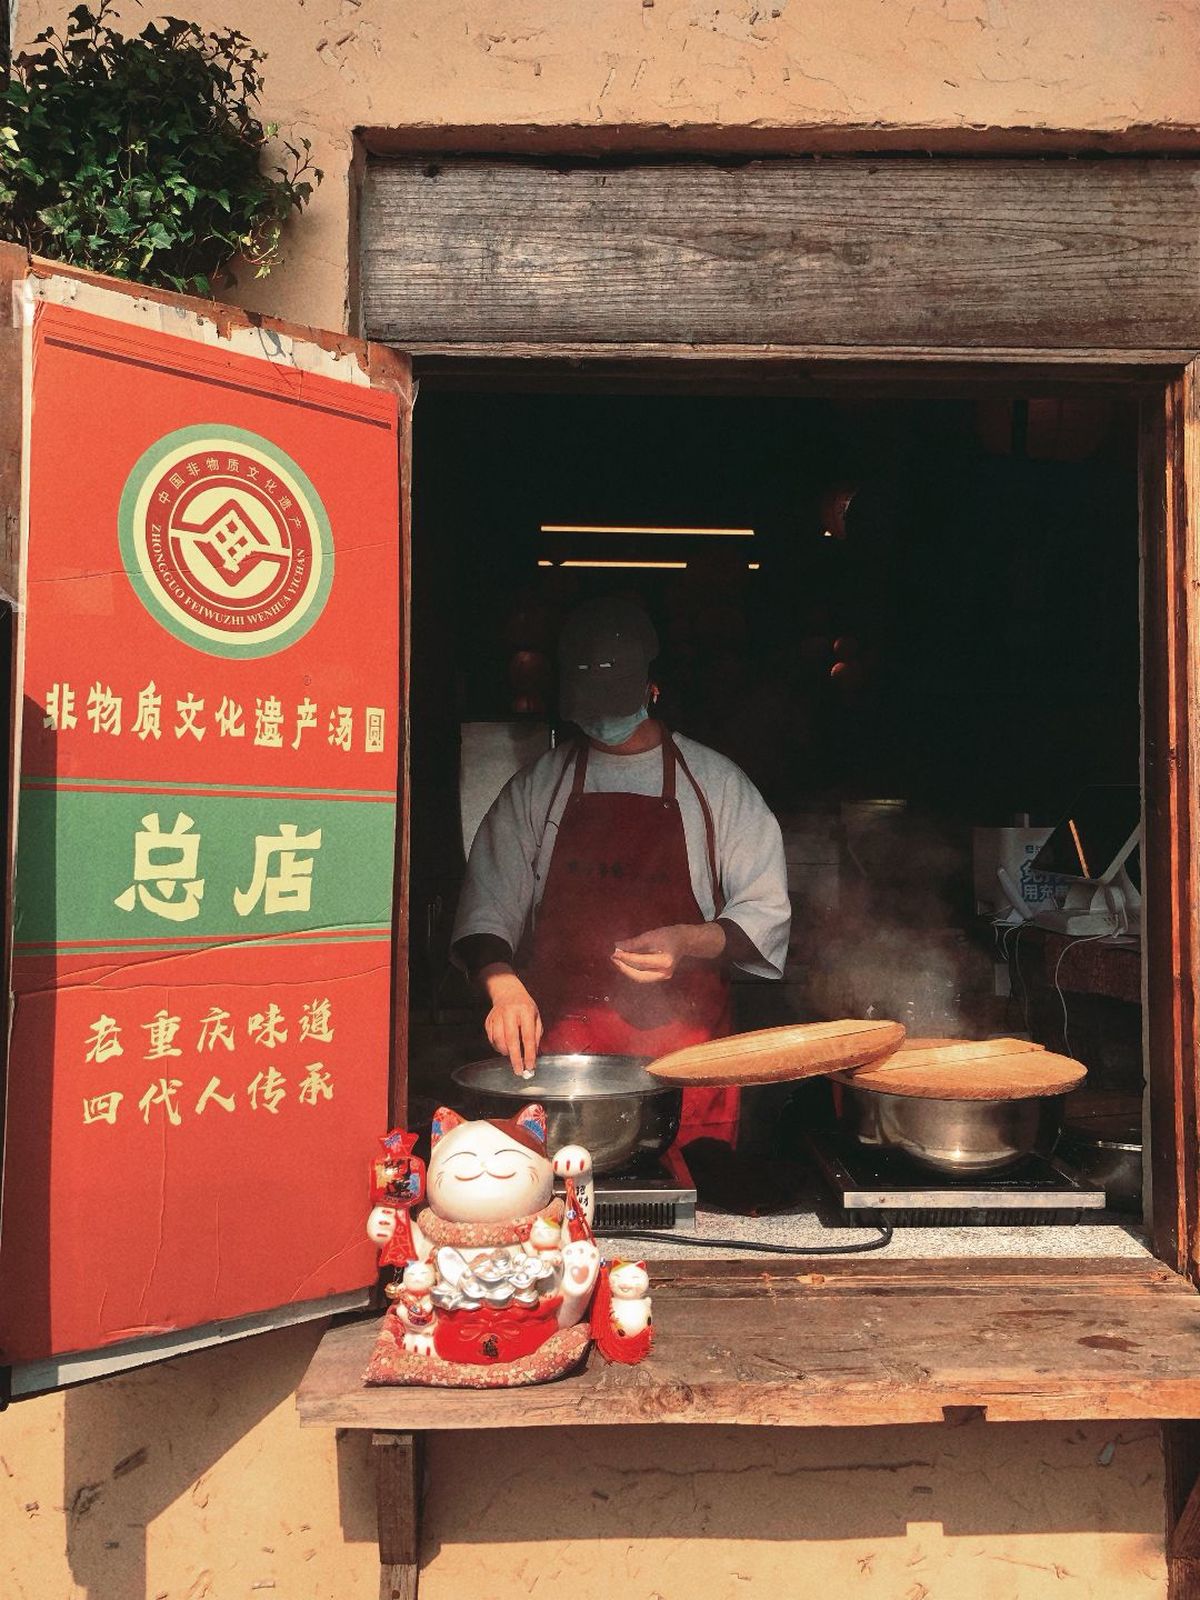 一个站在小建筑外面用锅铲烹饪食物的男子